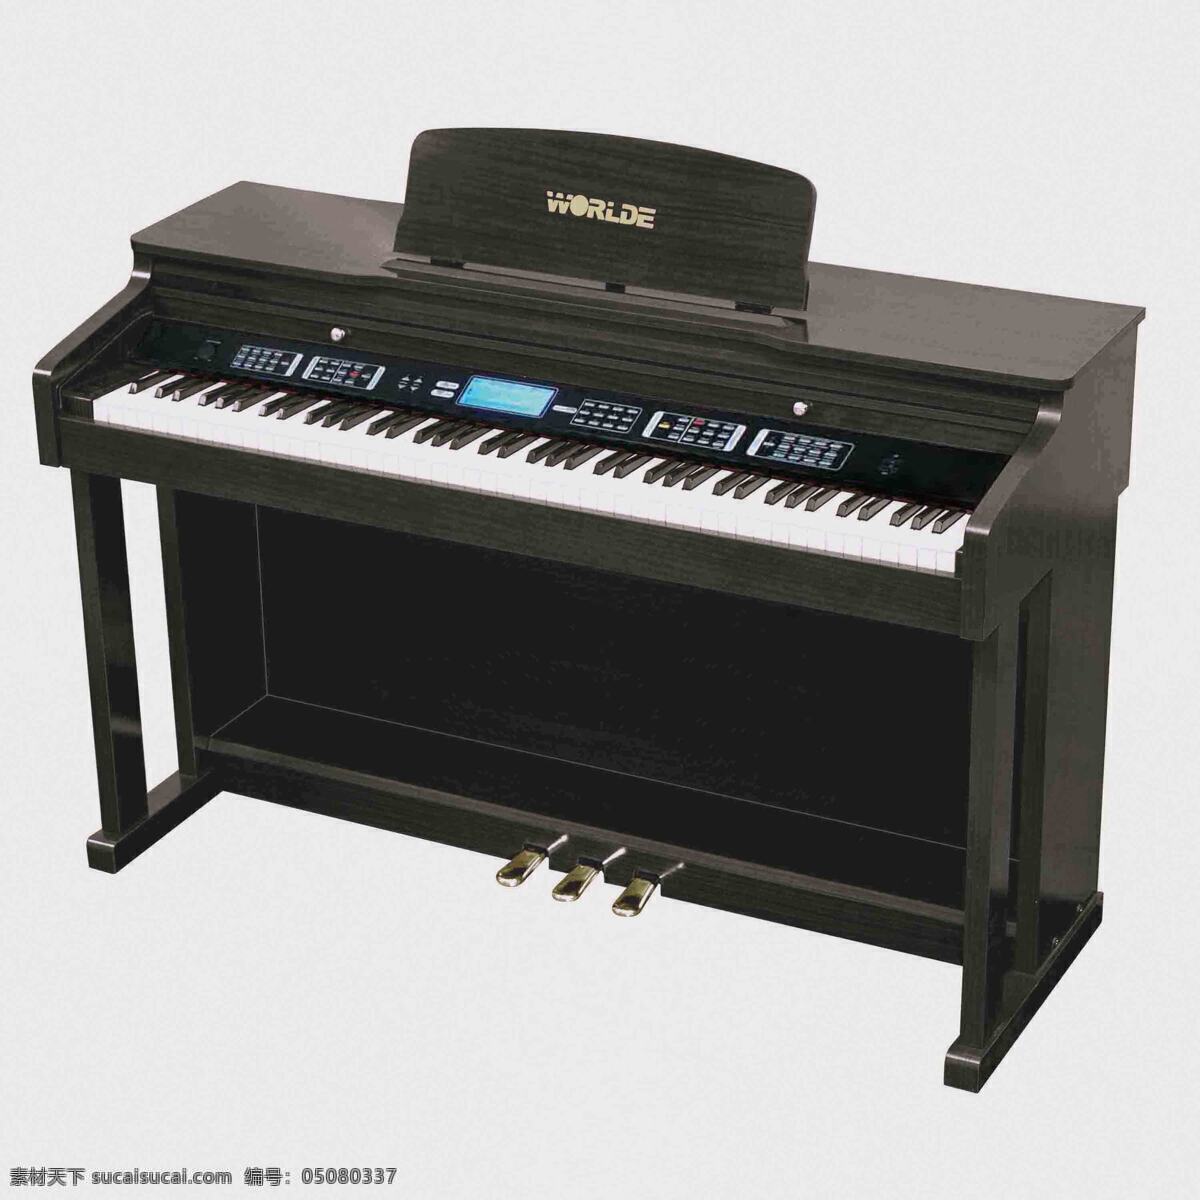 钢琴 乐器 文化艺术 舞蹈音乐 电子钢琴 立式钢琴 乐谱架 88标准琴键 电脑模拟音色 电声乐器 电子数码乐器 键盘乐器 西洋乐器之一